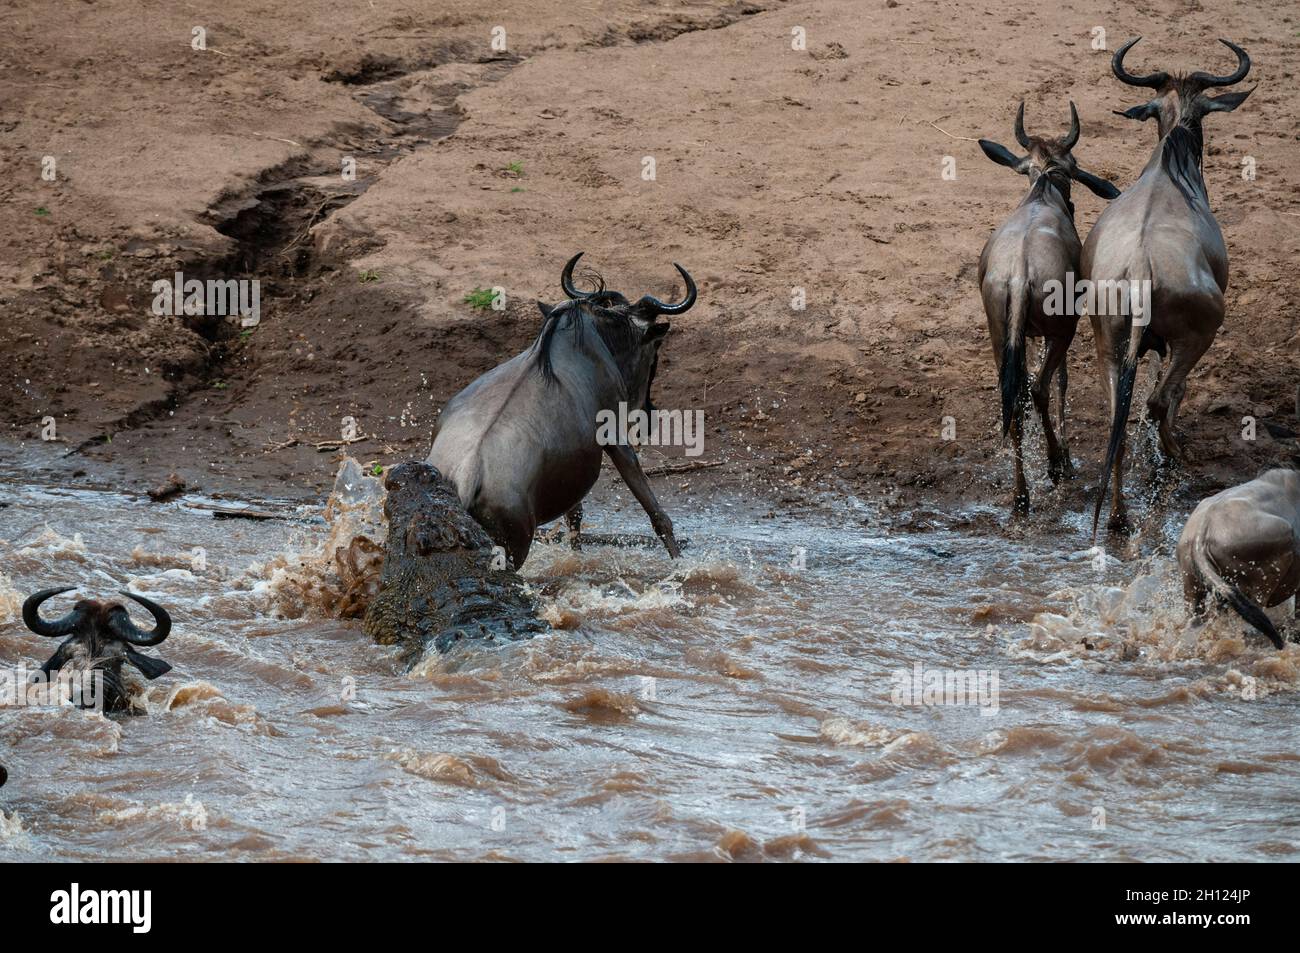 Un cocodrilo del Nilo, el cocodrilo niloticus, atacando a un salvaje, Connochaetes taurinus, cruzando el río Mara. Río Mara, Reserva Nacional de Masai Mara Foto de stock